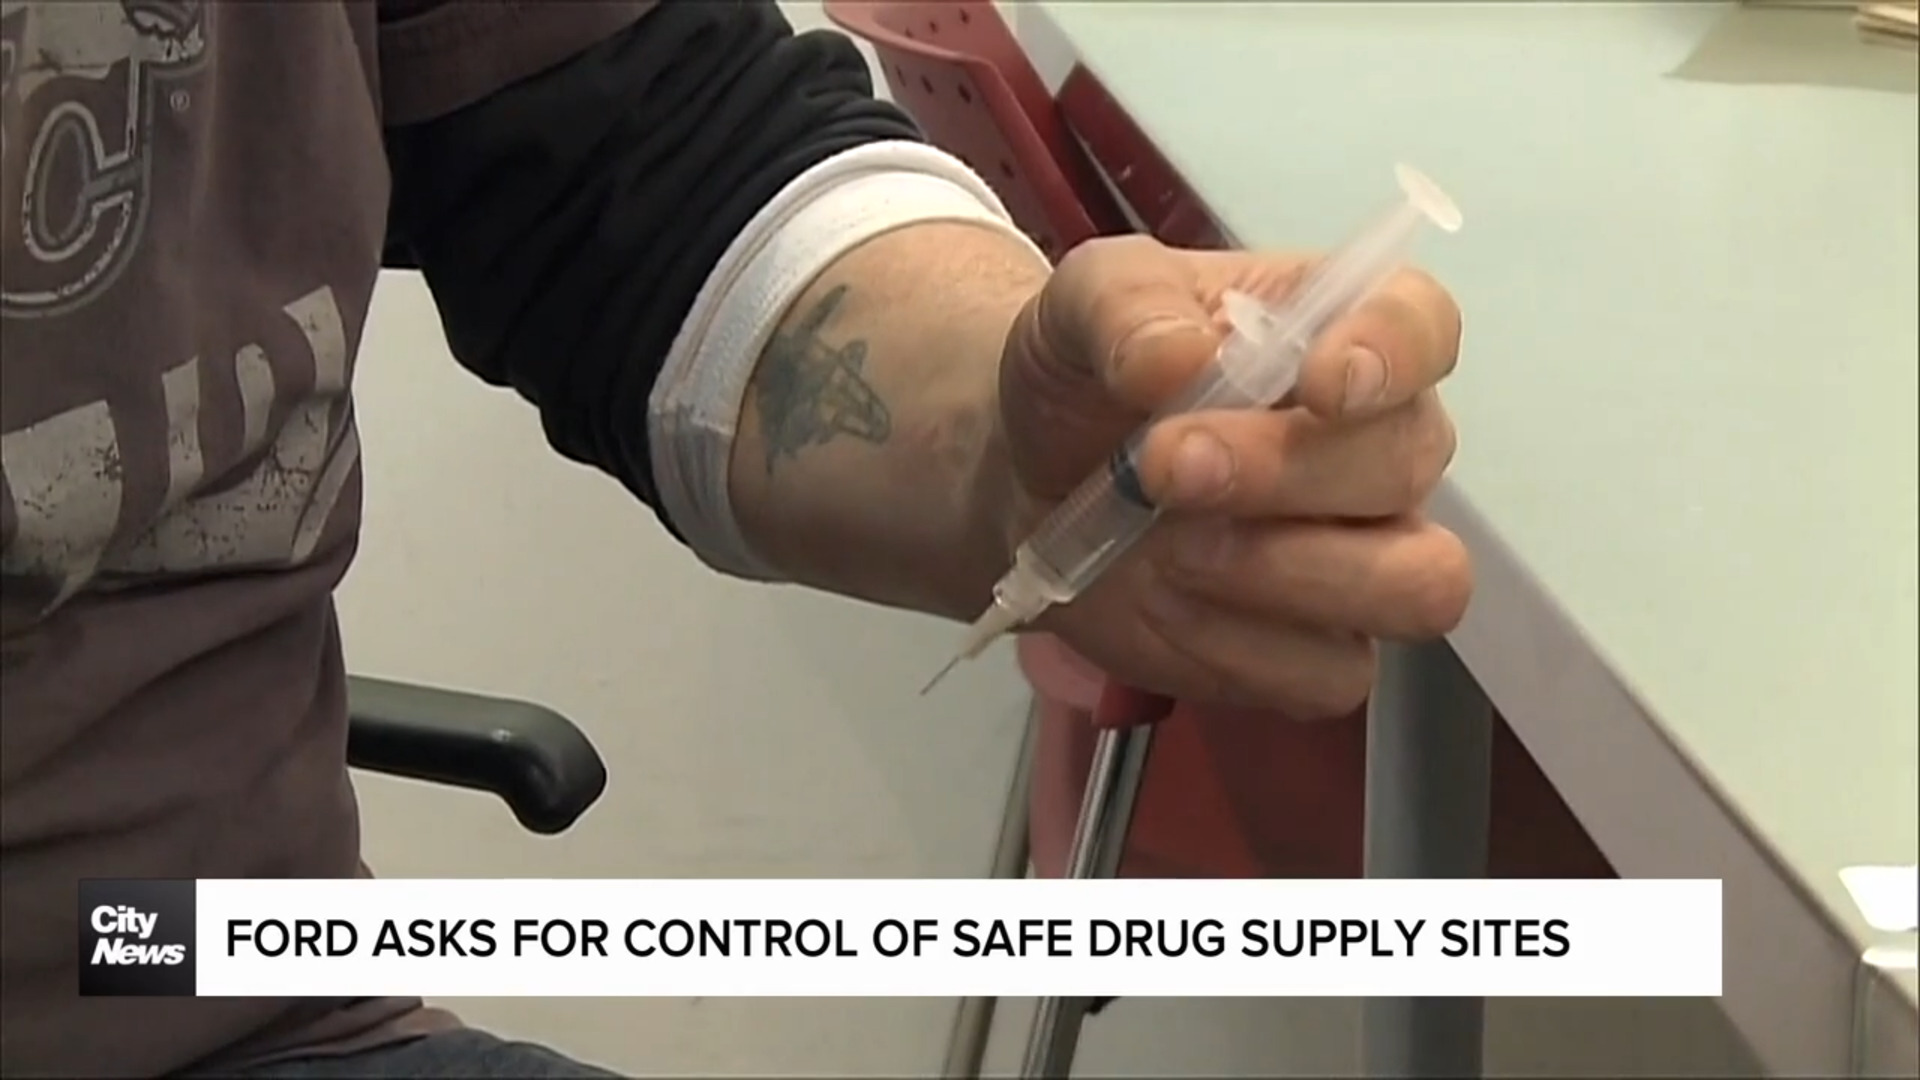 Premier Ford asks for control of province's safe drug supply sites